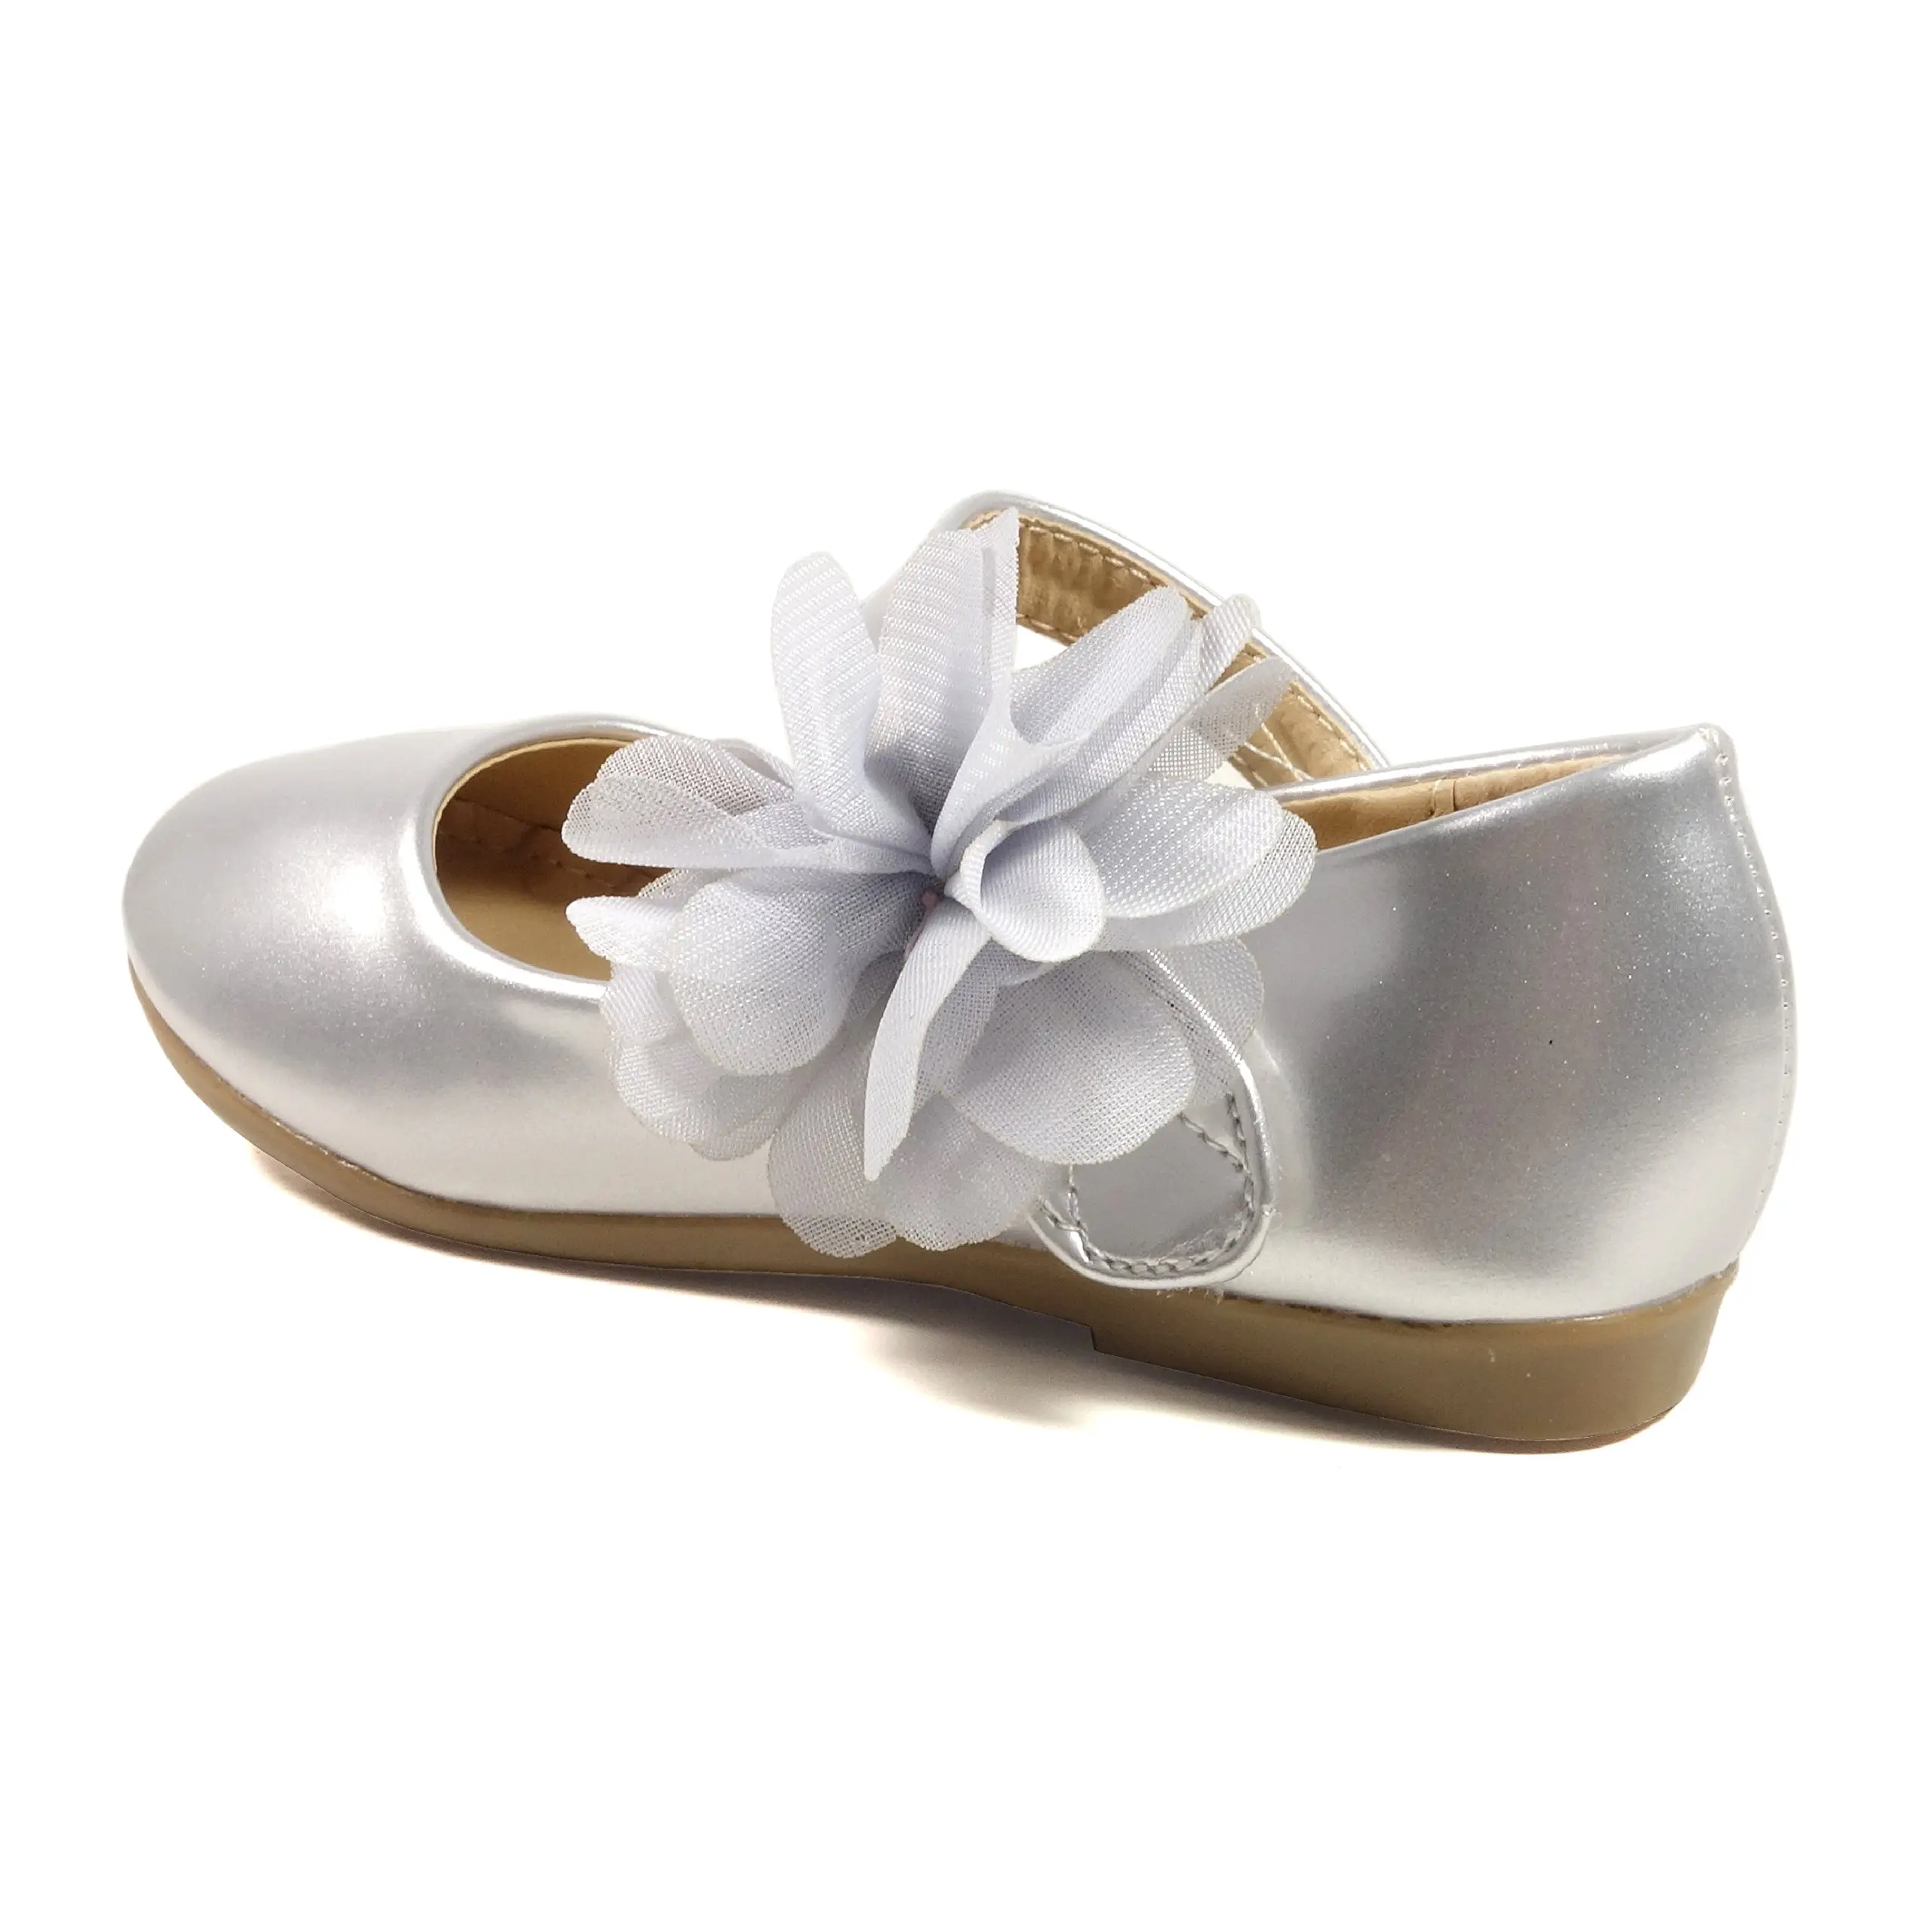 Nova Toddler white kids girls dress shoes jelly sandals for kids girl suitable for summer